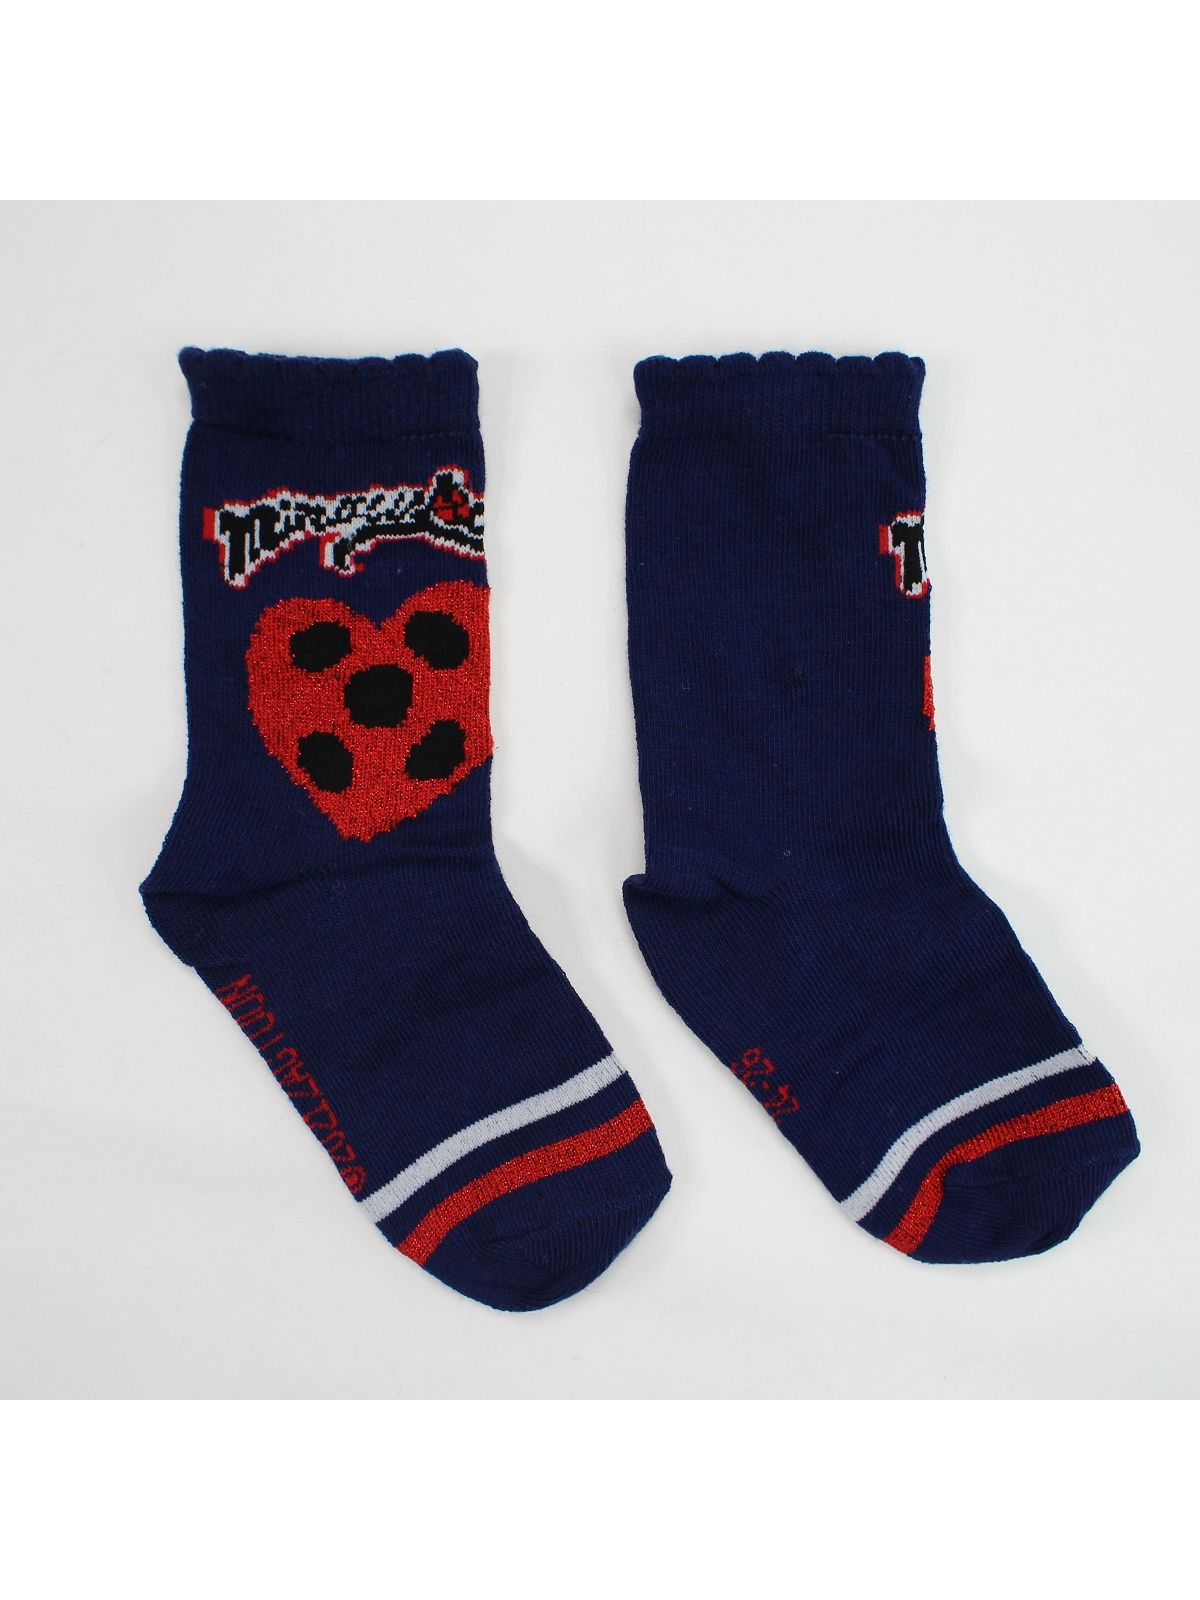 Ladybug Packung mit 10 Paar Socken